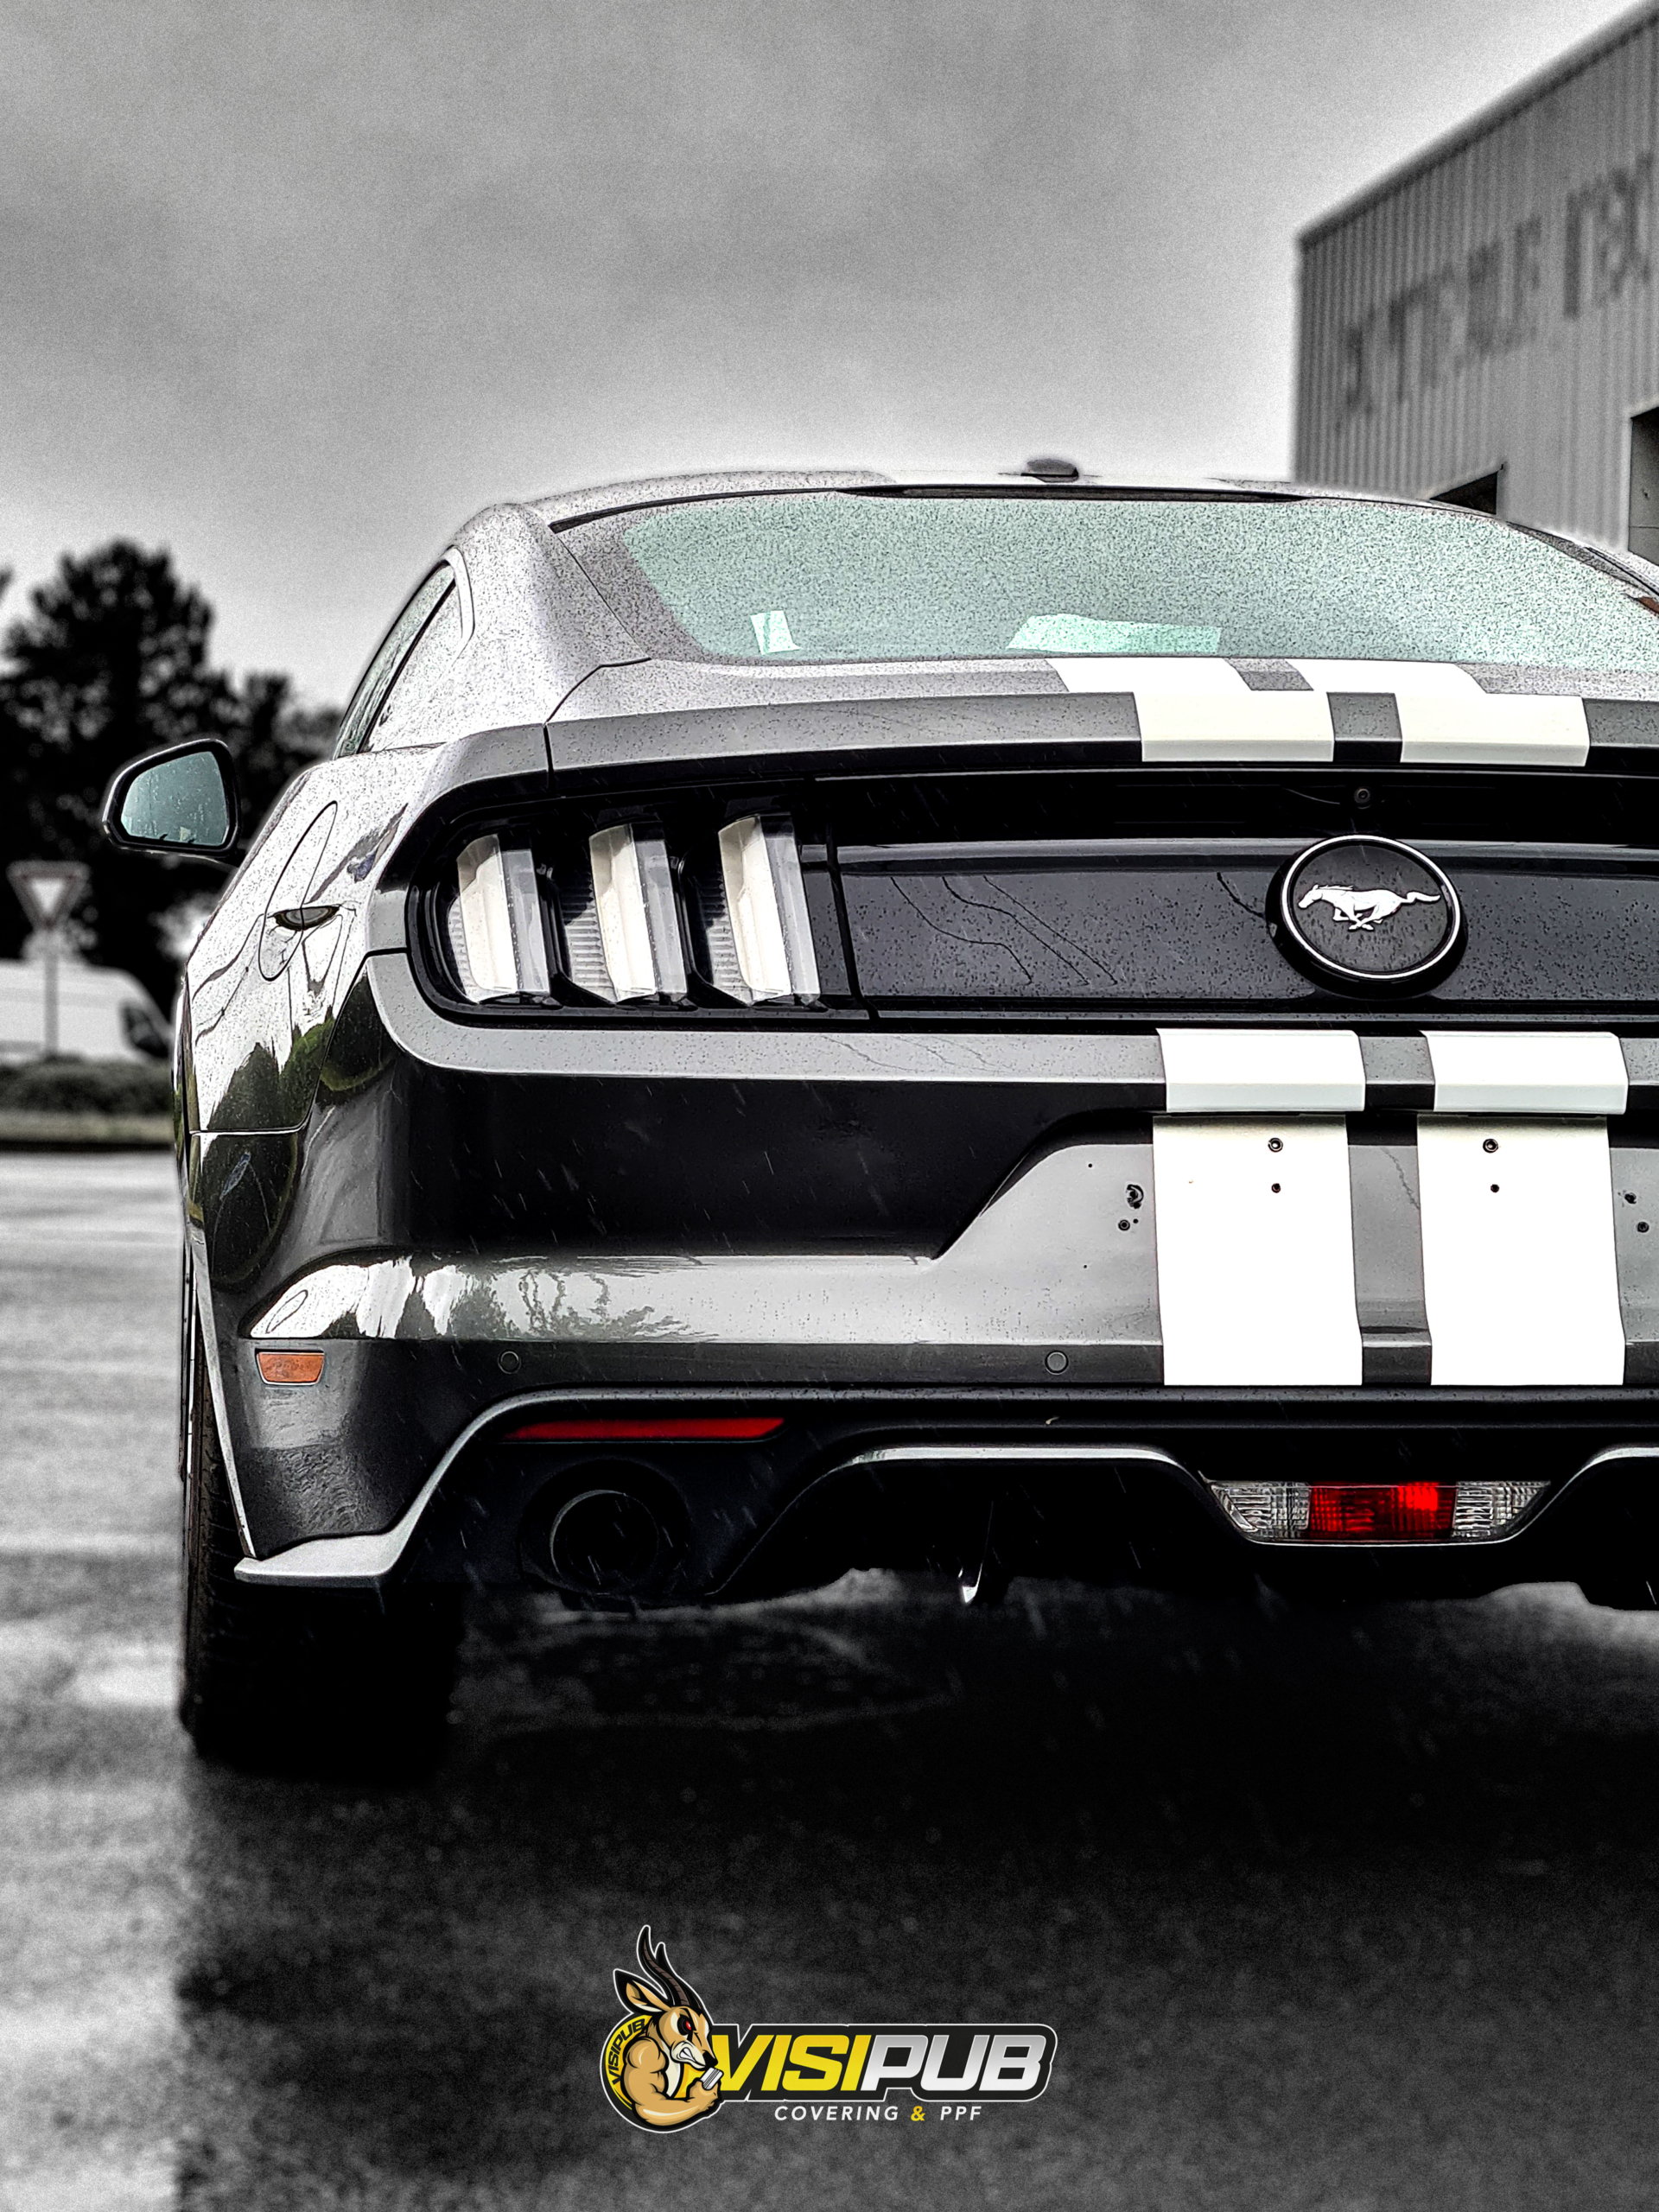 Voiture Ford Mustang noire avec des bandes blanche